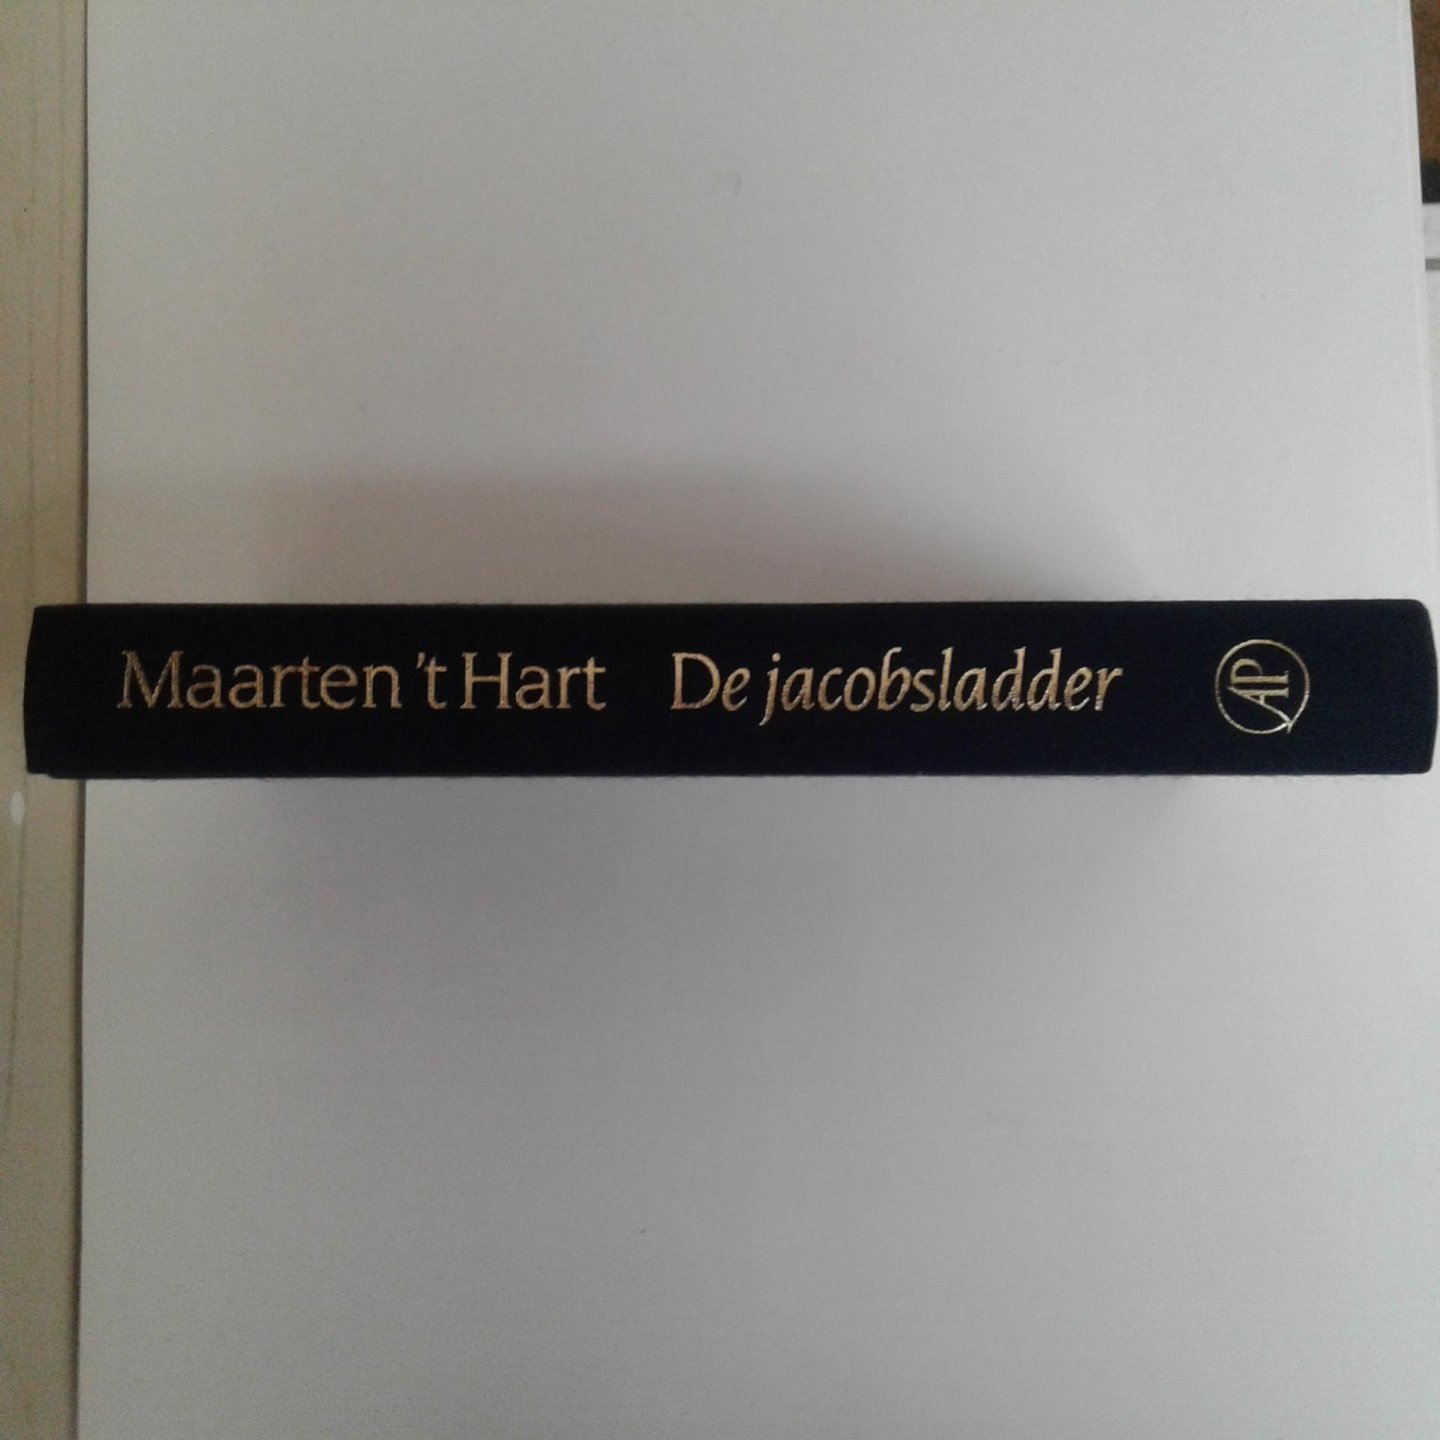 Hart, Maarten 't - De Jacobsladder